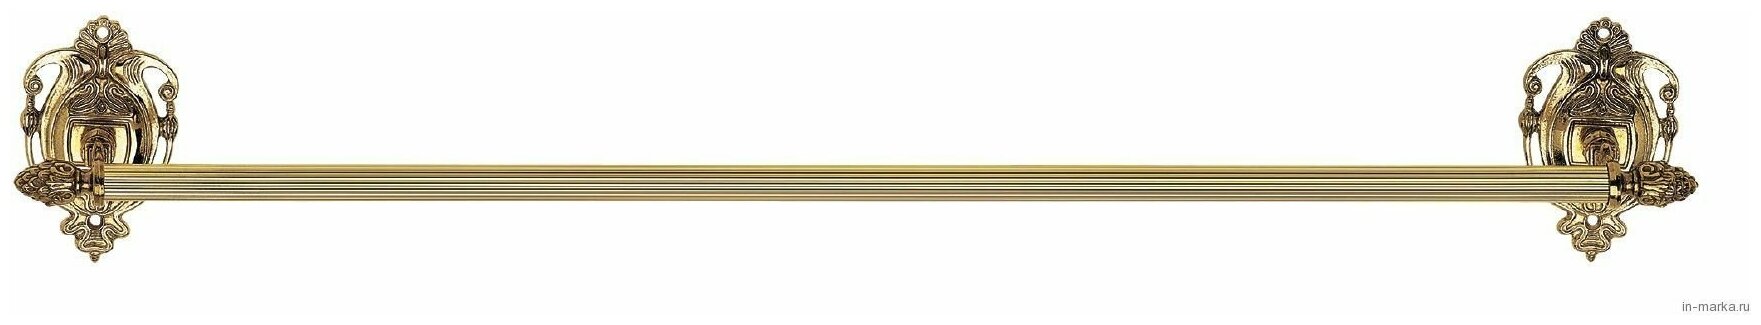 Полотенцедержатель Art&Max Impero античное золото AM-1225-Do-Ant